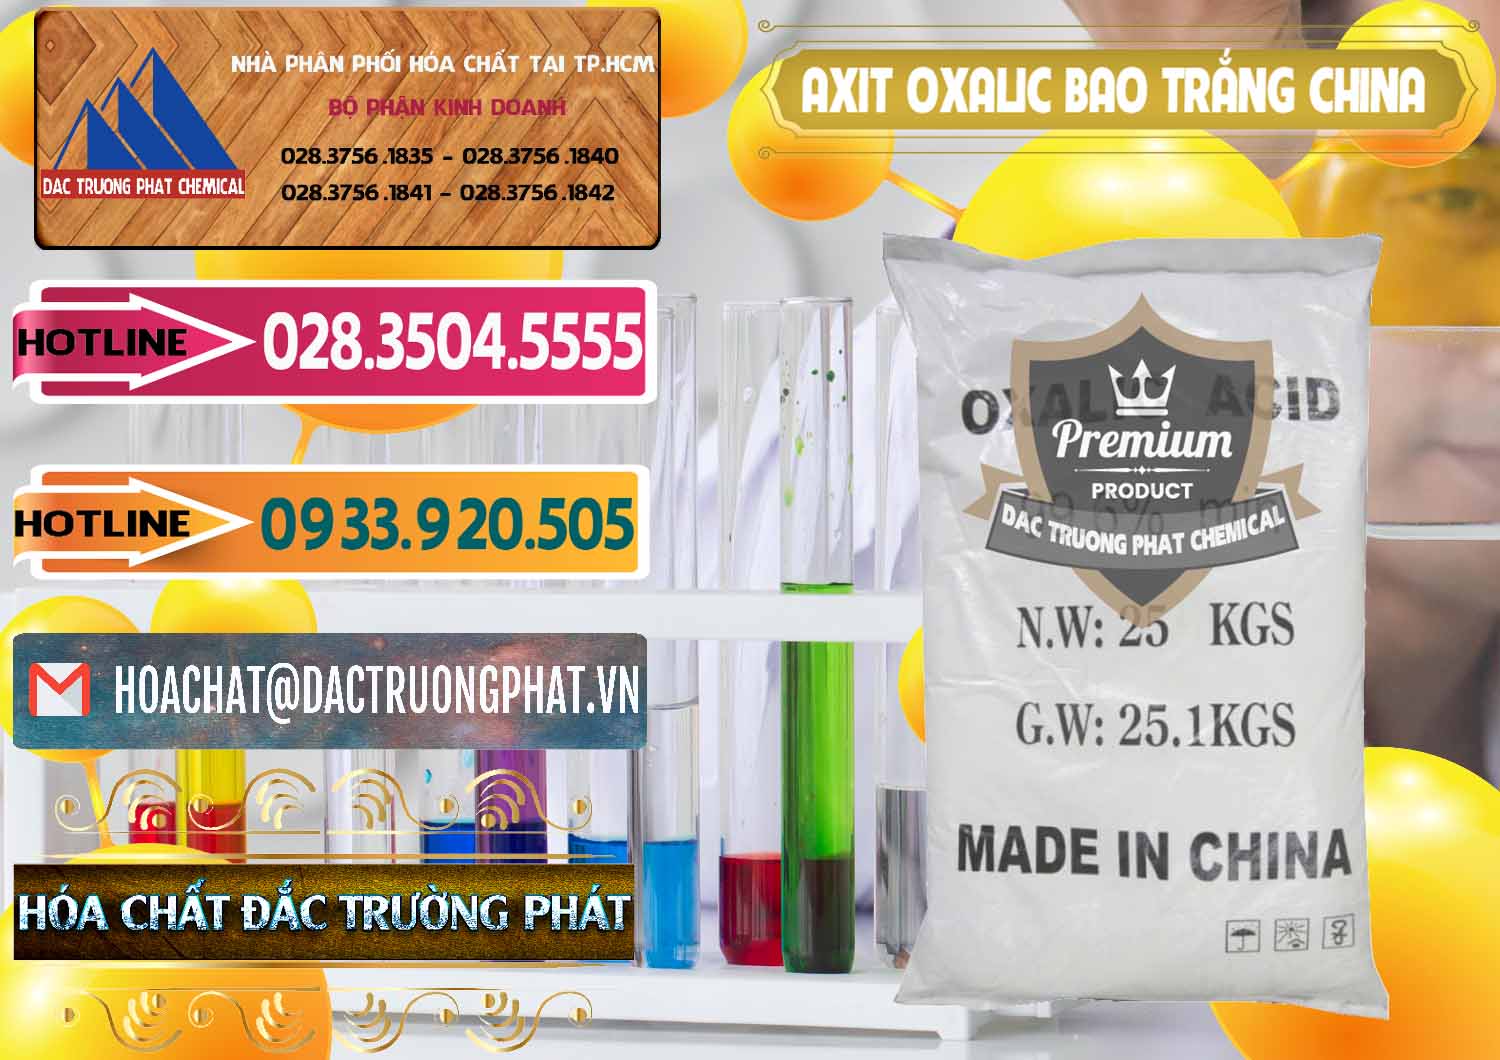 Công ty cung cấp và bán Acid Oxalic – Axit Oxalic 99.6% Bao Trắng Trung Quốc China - 0270 - Nhà cung cấp - bán hóa chất tại TP.HCM - dactruongphat.vn